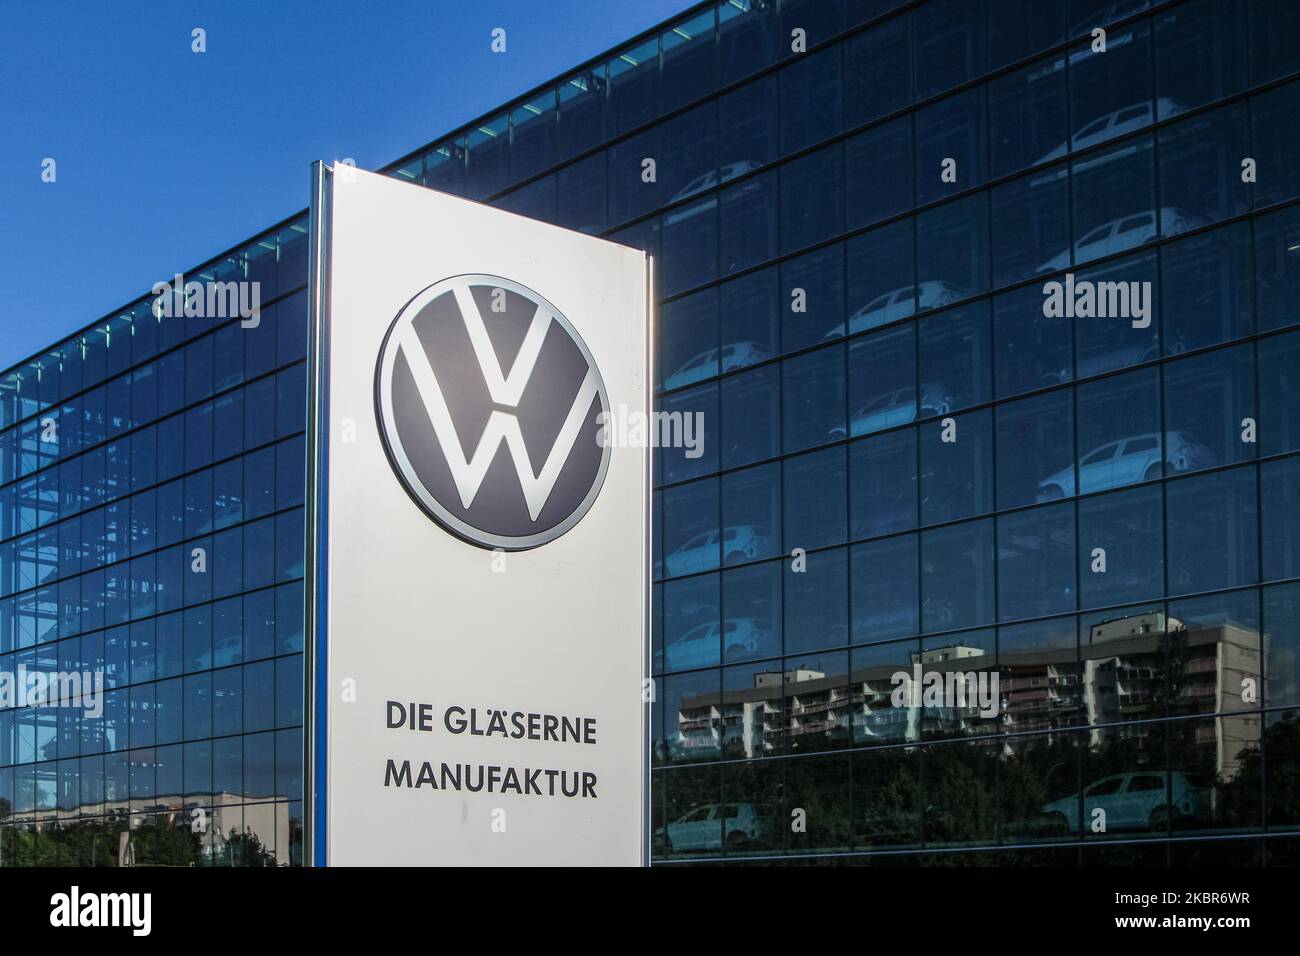 Volkswagen Transparent factory se ve en Dresde, Alemania El 11 de junio de 2020, la fábrica transparente es una fábrica de automóviles y un espacio de exposición en Dresde, propiedad de Volkswagen y diseñado por el arquitecto Gunter Henn. Originalmente abrió sus puertas en 2002, produciendo el Volkswagen Phaeton hasta 2016. A partir de 2017 produce la versión eléctrica del VW Golf. (Foto de Michal Fludra/NurPhoto) Foto de stock